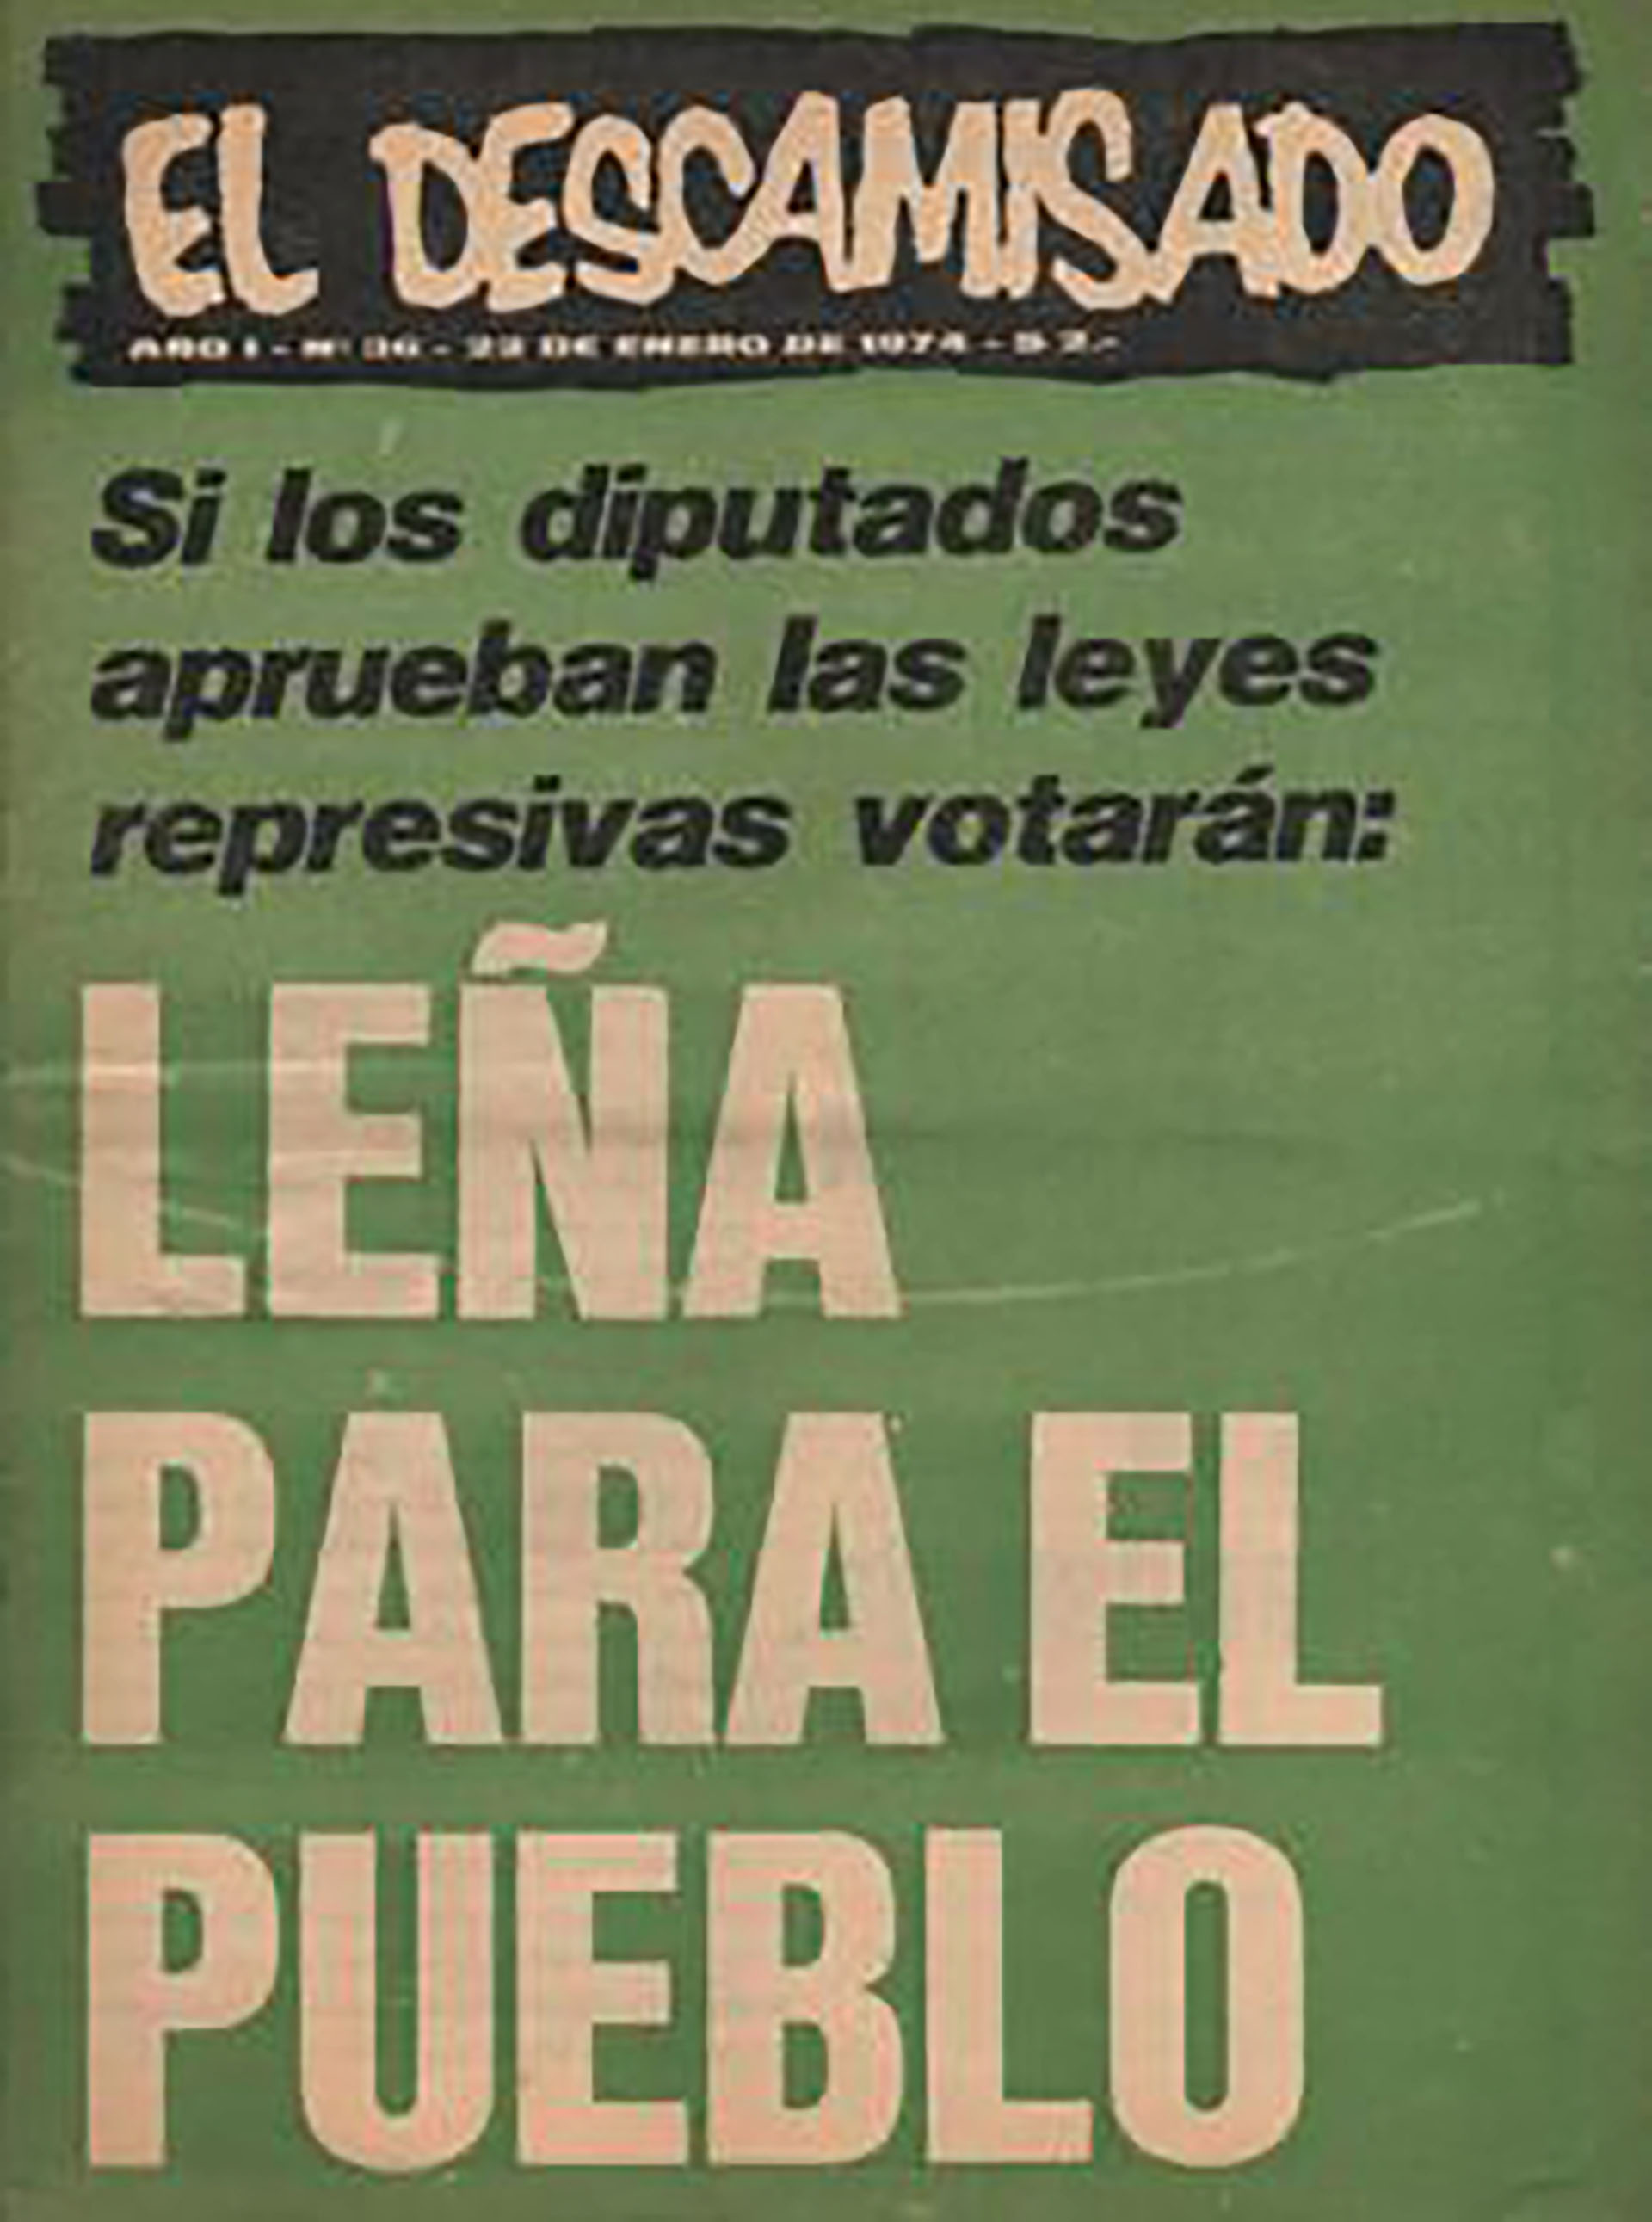 Críticas de la revista Descamisados a la reforma del Código Penal propuesta por Perón